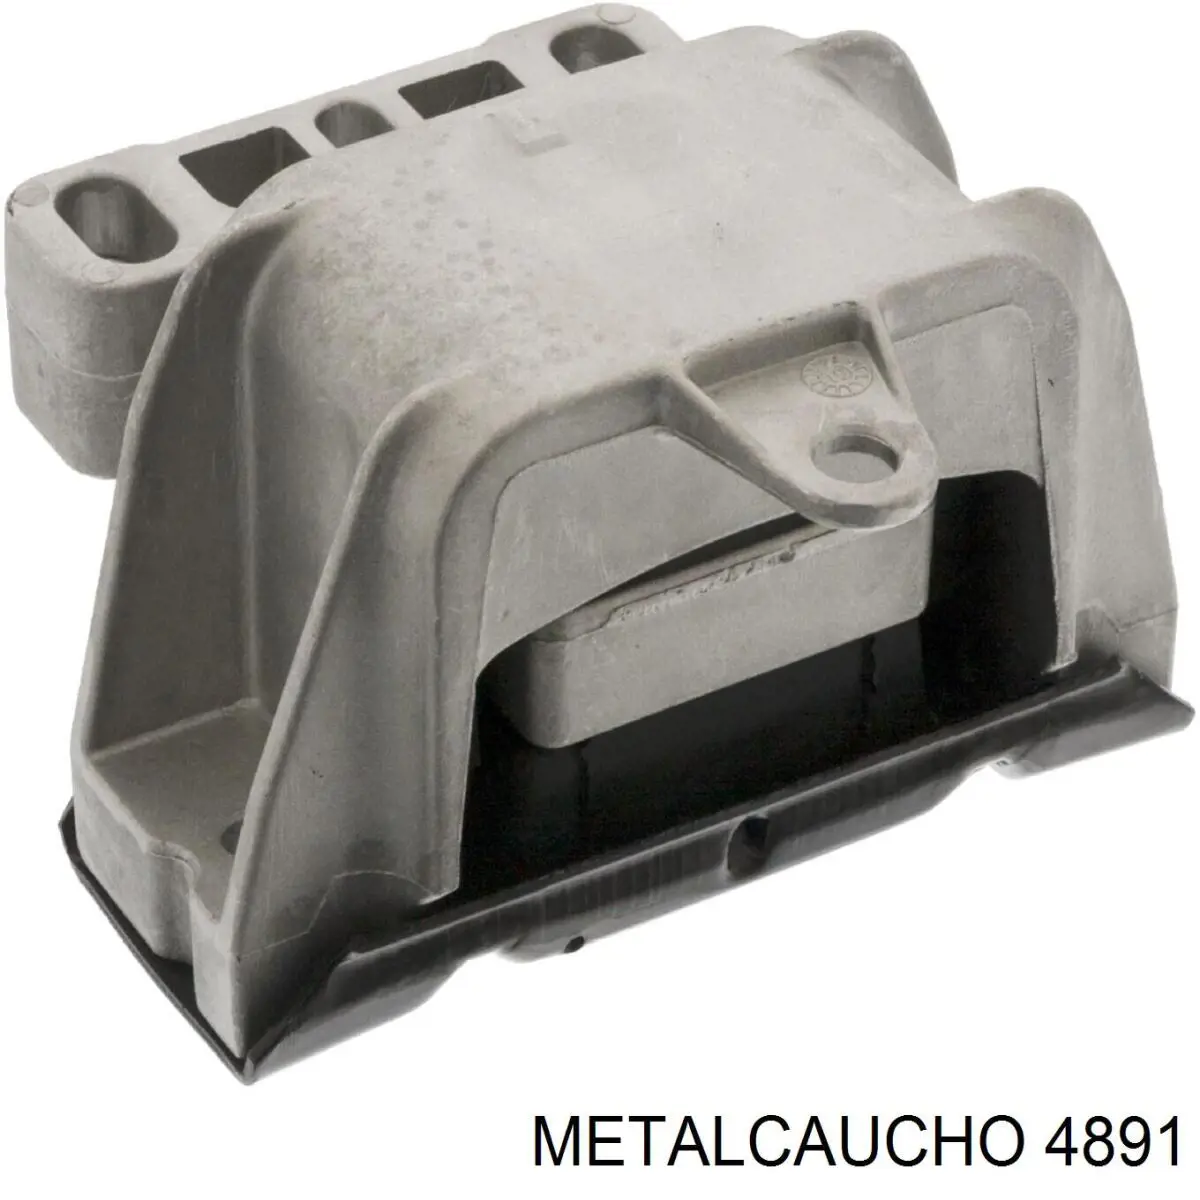 4891 Metalcaucho coxim (suporte traseiro de motor)